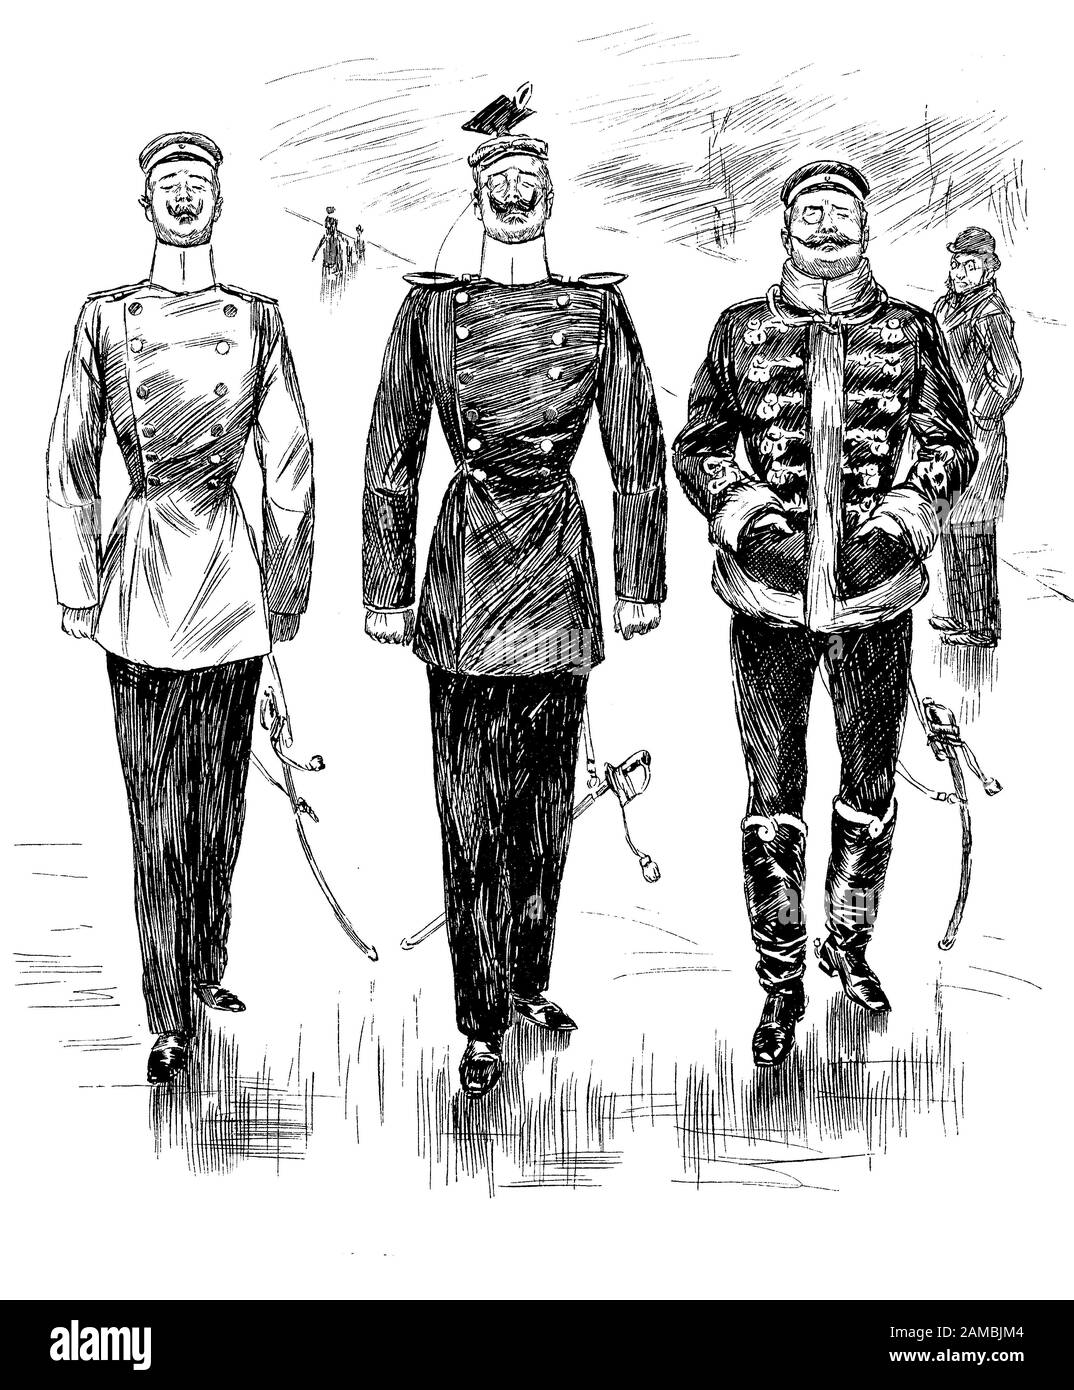 Deutsche Satirezeitschrift, drei stolze Offiziere stechen mit ihren eleganten Uniformen, gewachsten Schnurrbart, Schwert und Monokle herum Stockfoto